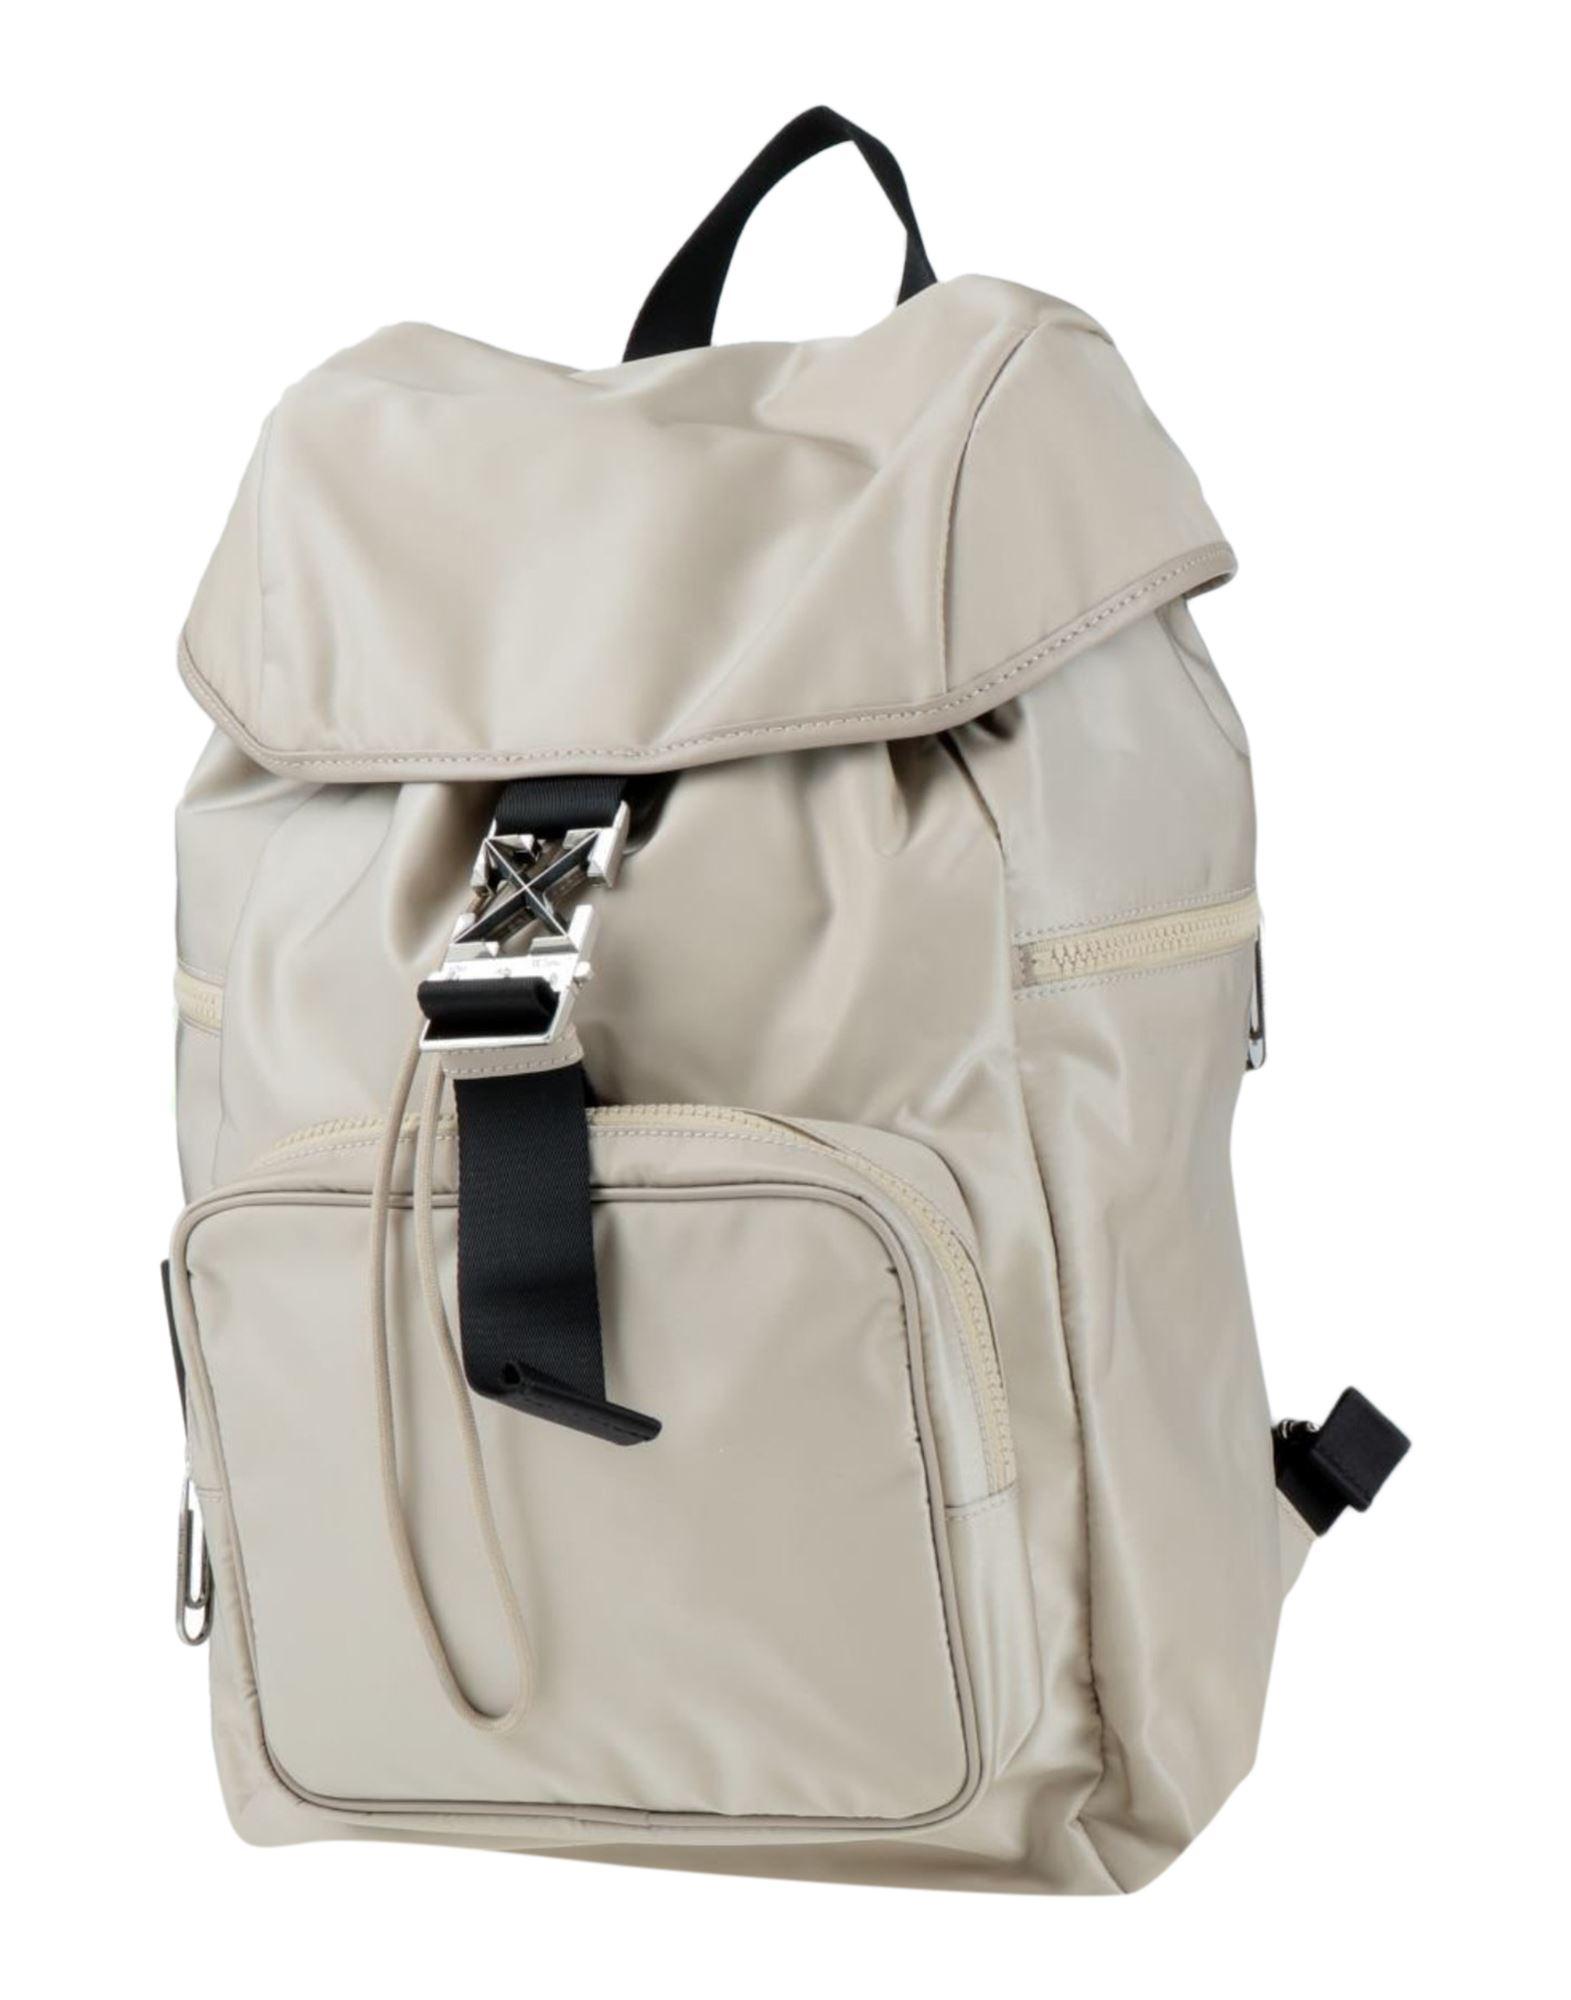 Off-White c/o Virgil Abloh Backpack in White for Men